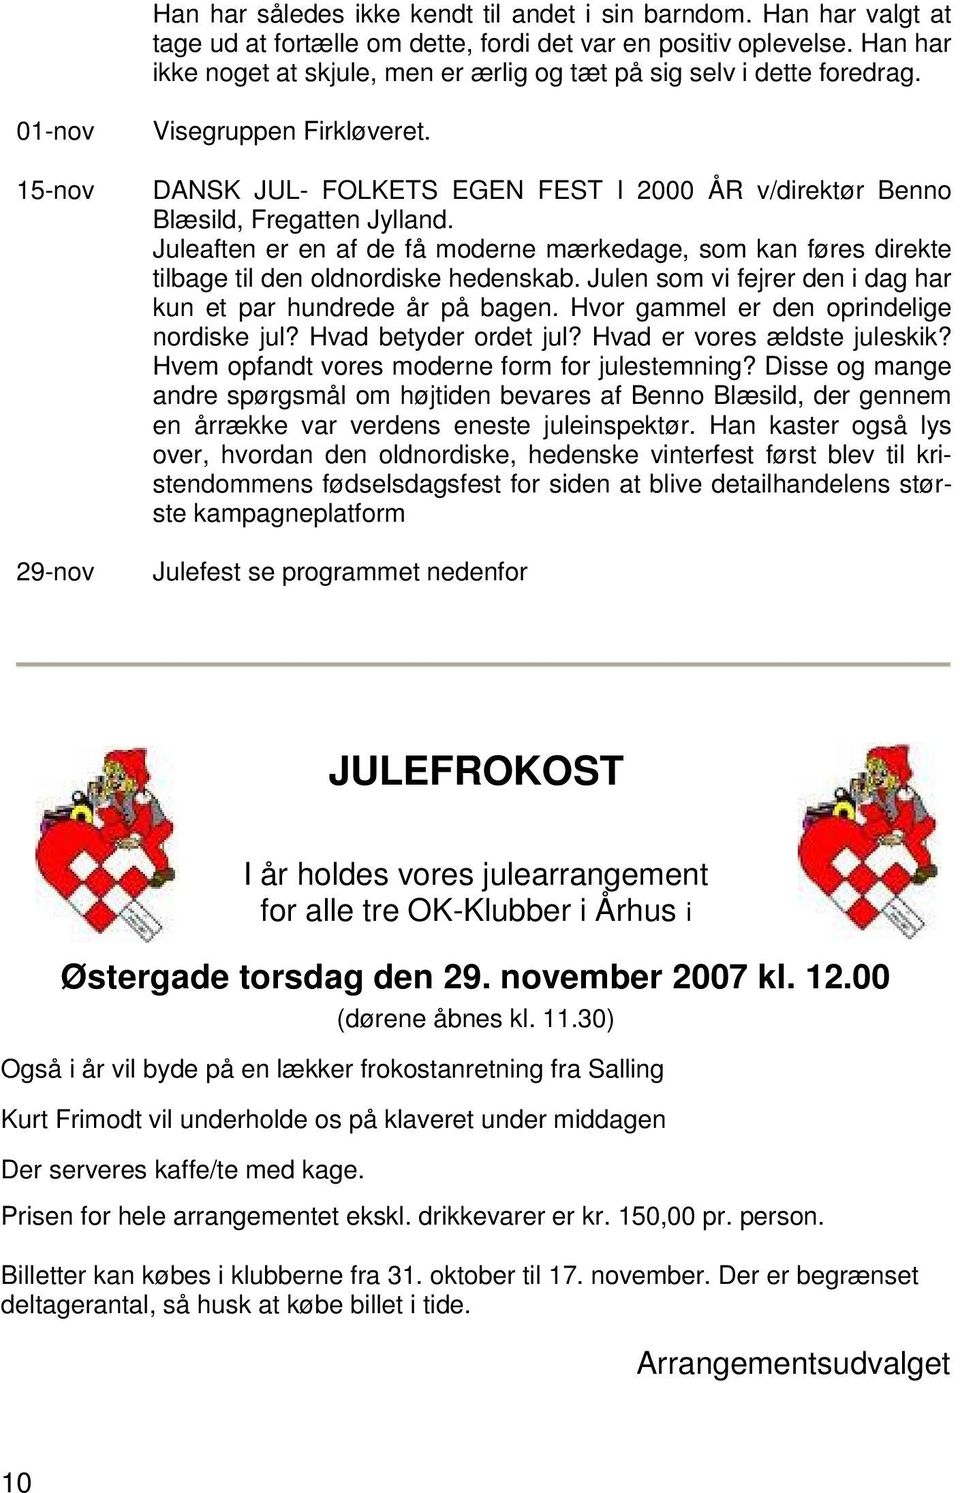 DANSK JUL- FOLKETS EGEN FEST I 2000 ÅR v/direktør Benno Blæsild, Fregatten Jylland. Juleaften er en af de få moderne mærkedage, som kan føres direkte tilbage til den oldnordiske hedenskab.